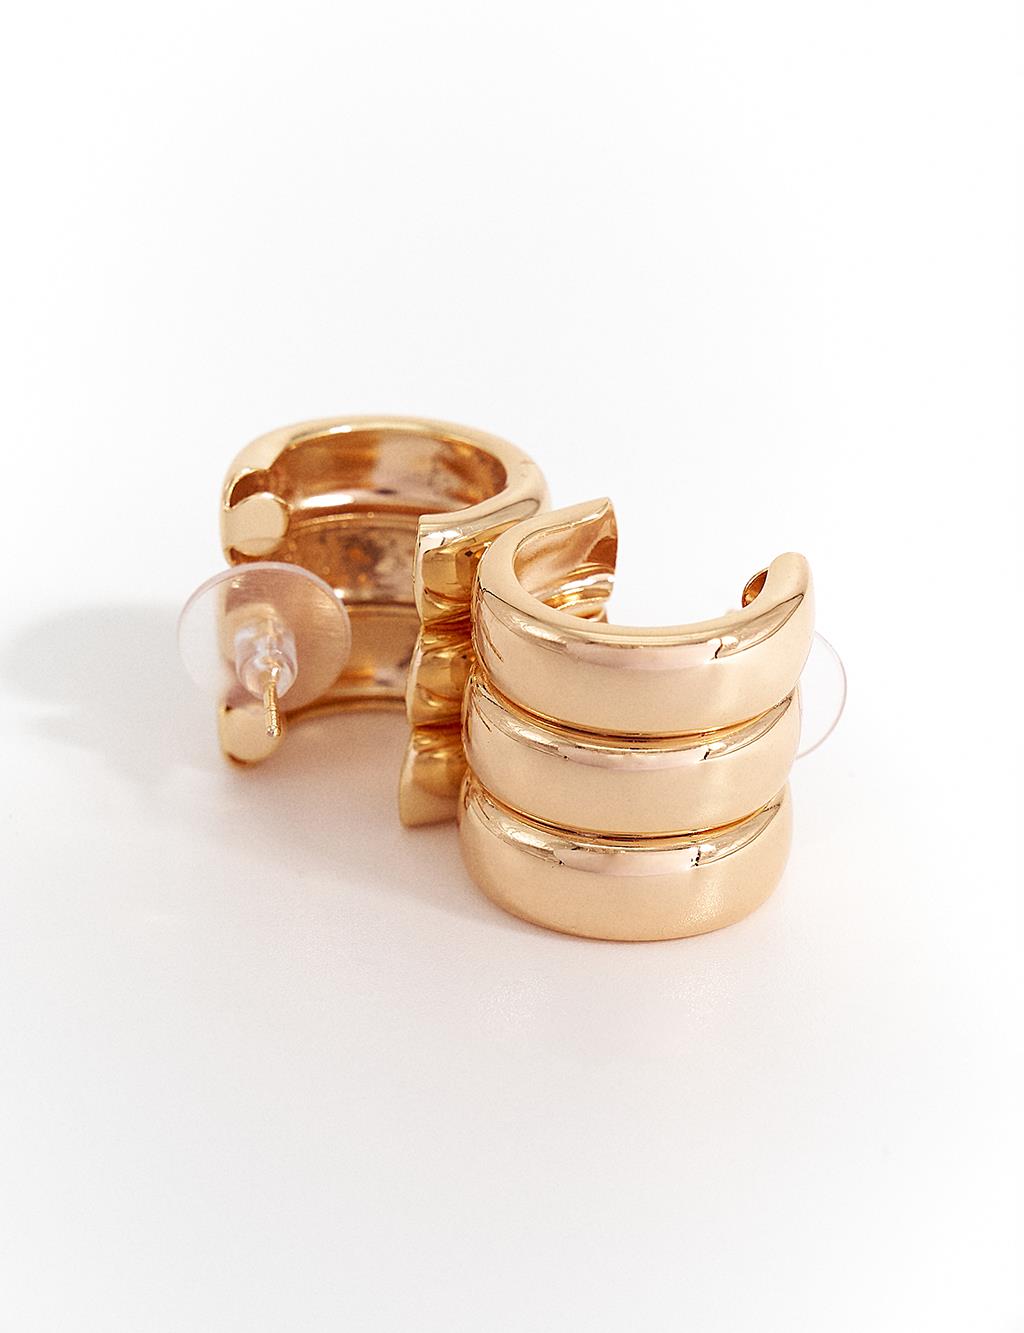 Multiple Ring Form Earrings Gold